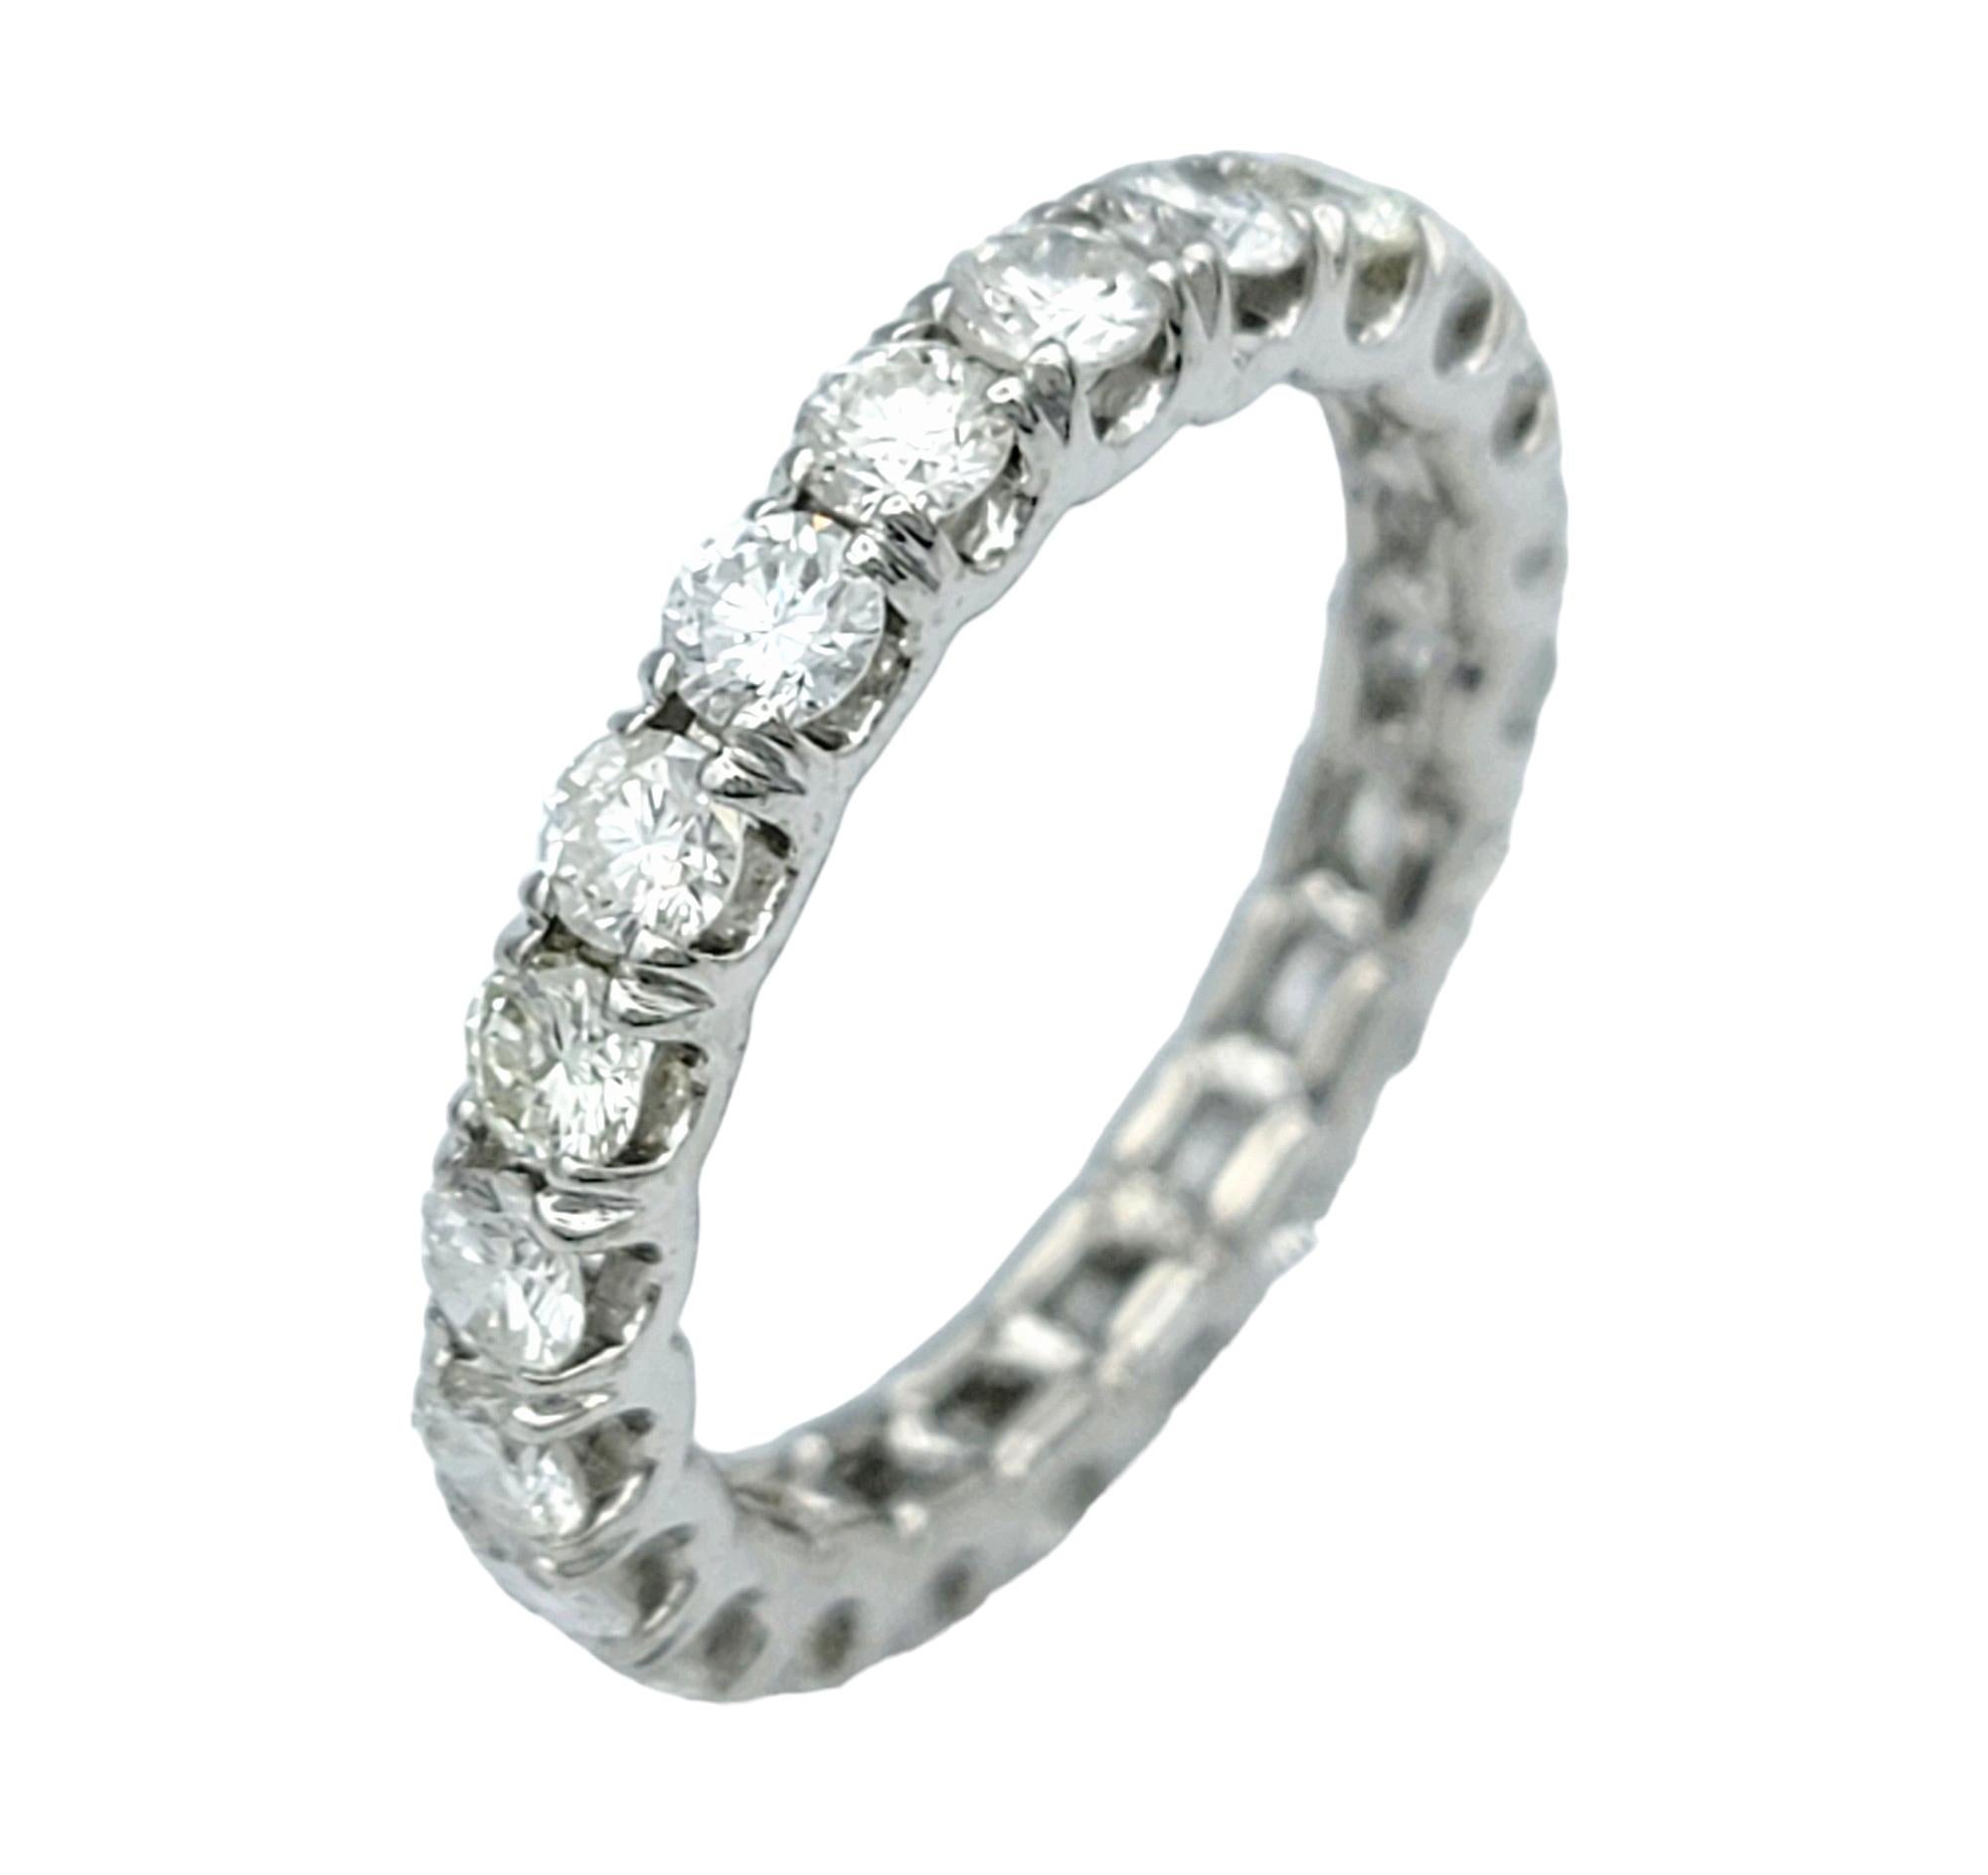 Taille de l'anneau : 6.75

Cette magnifique bague d'éternité en diamant, sertie dans un luxueux or blanc 18 carats, est un symbole intemporel d'amour et d'engagement éternels. Incrustée d'une bande continue de diamants étincelants qui encercle toute